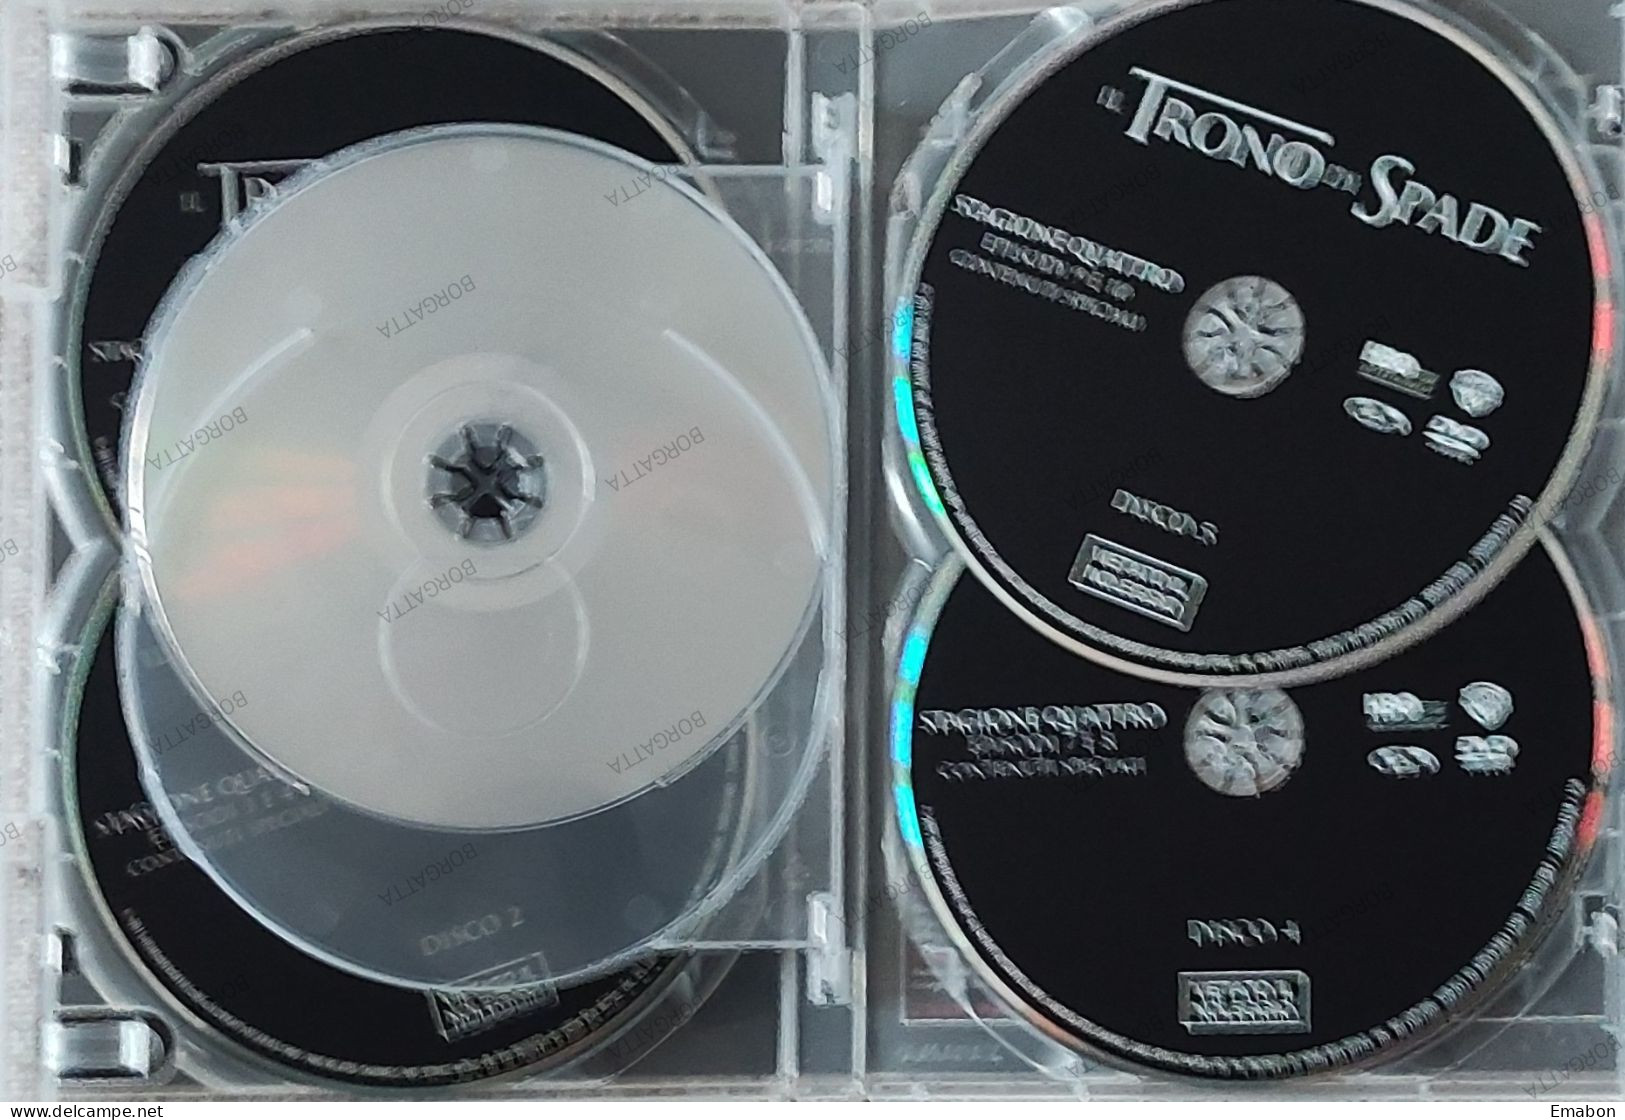 BORGATTA - FANTASTICO - BOX 5 Dvd " IL TRONO DI SPADE QUARTA STAGIONE "-  - HBO 2015 -  USATO In Buono Stato - Fantasía